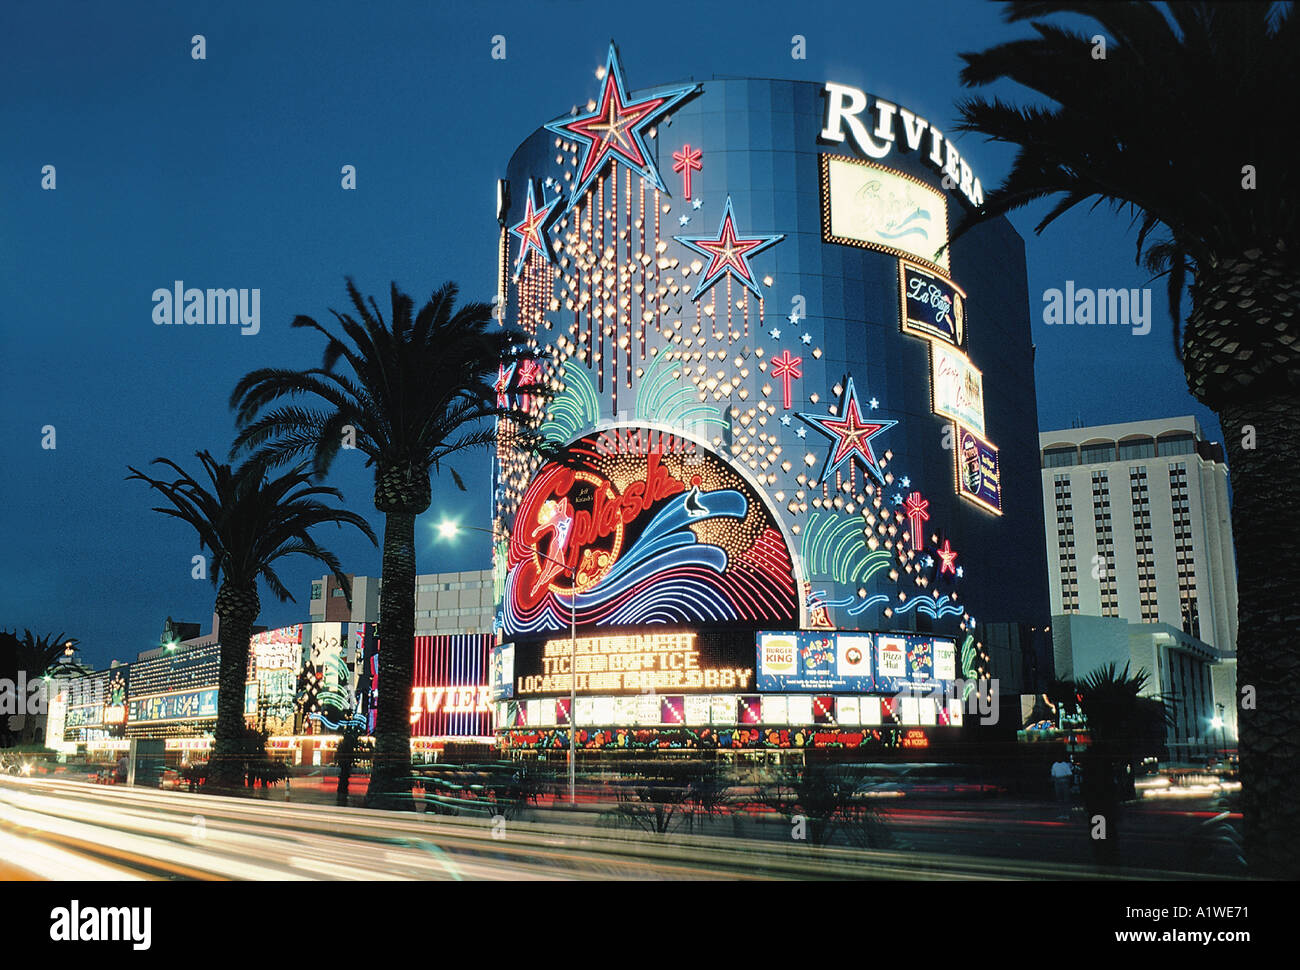 File:Riviera hotel, Las Vegas Strip, NV, USA - panoramio.jpg